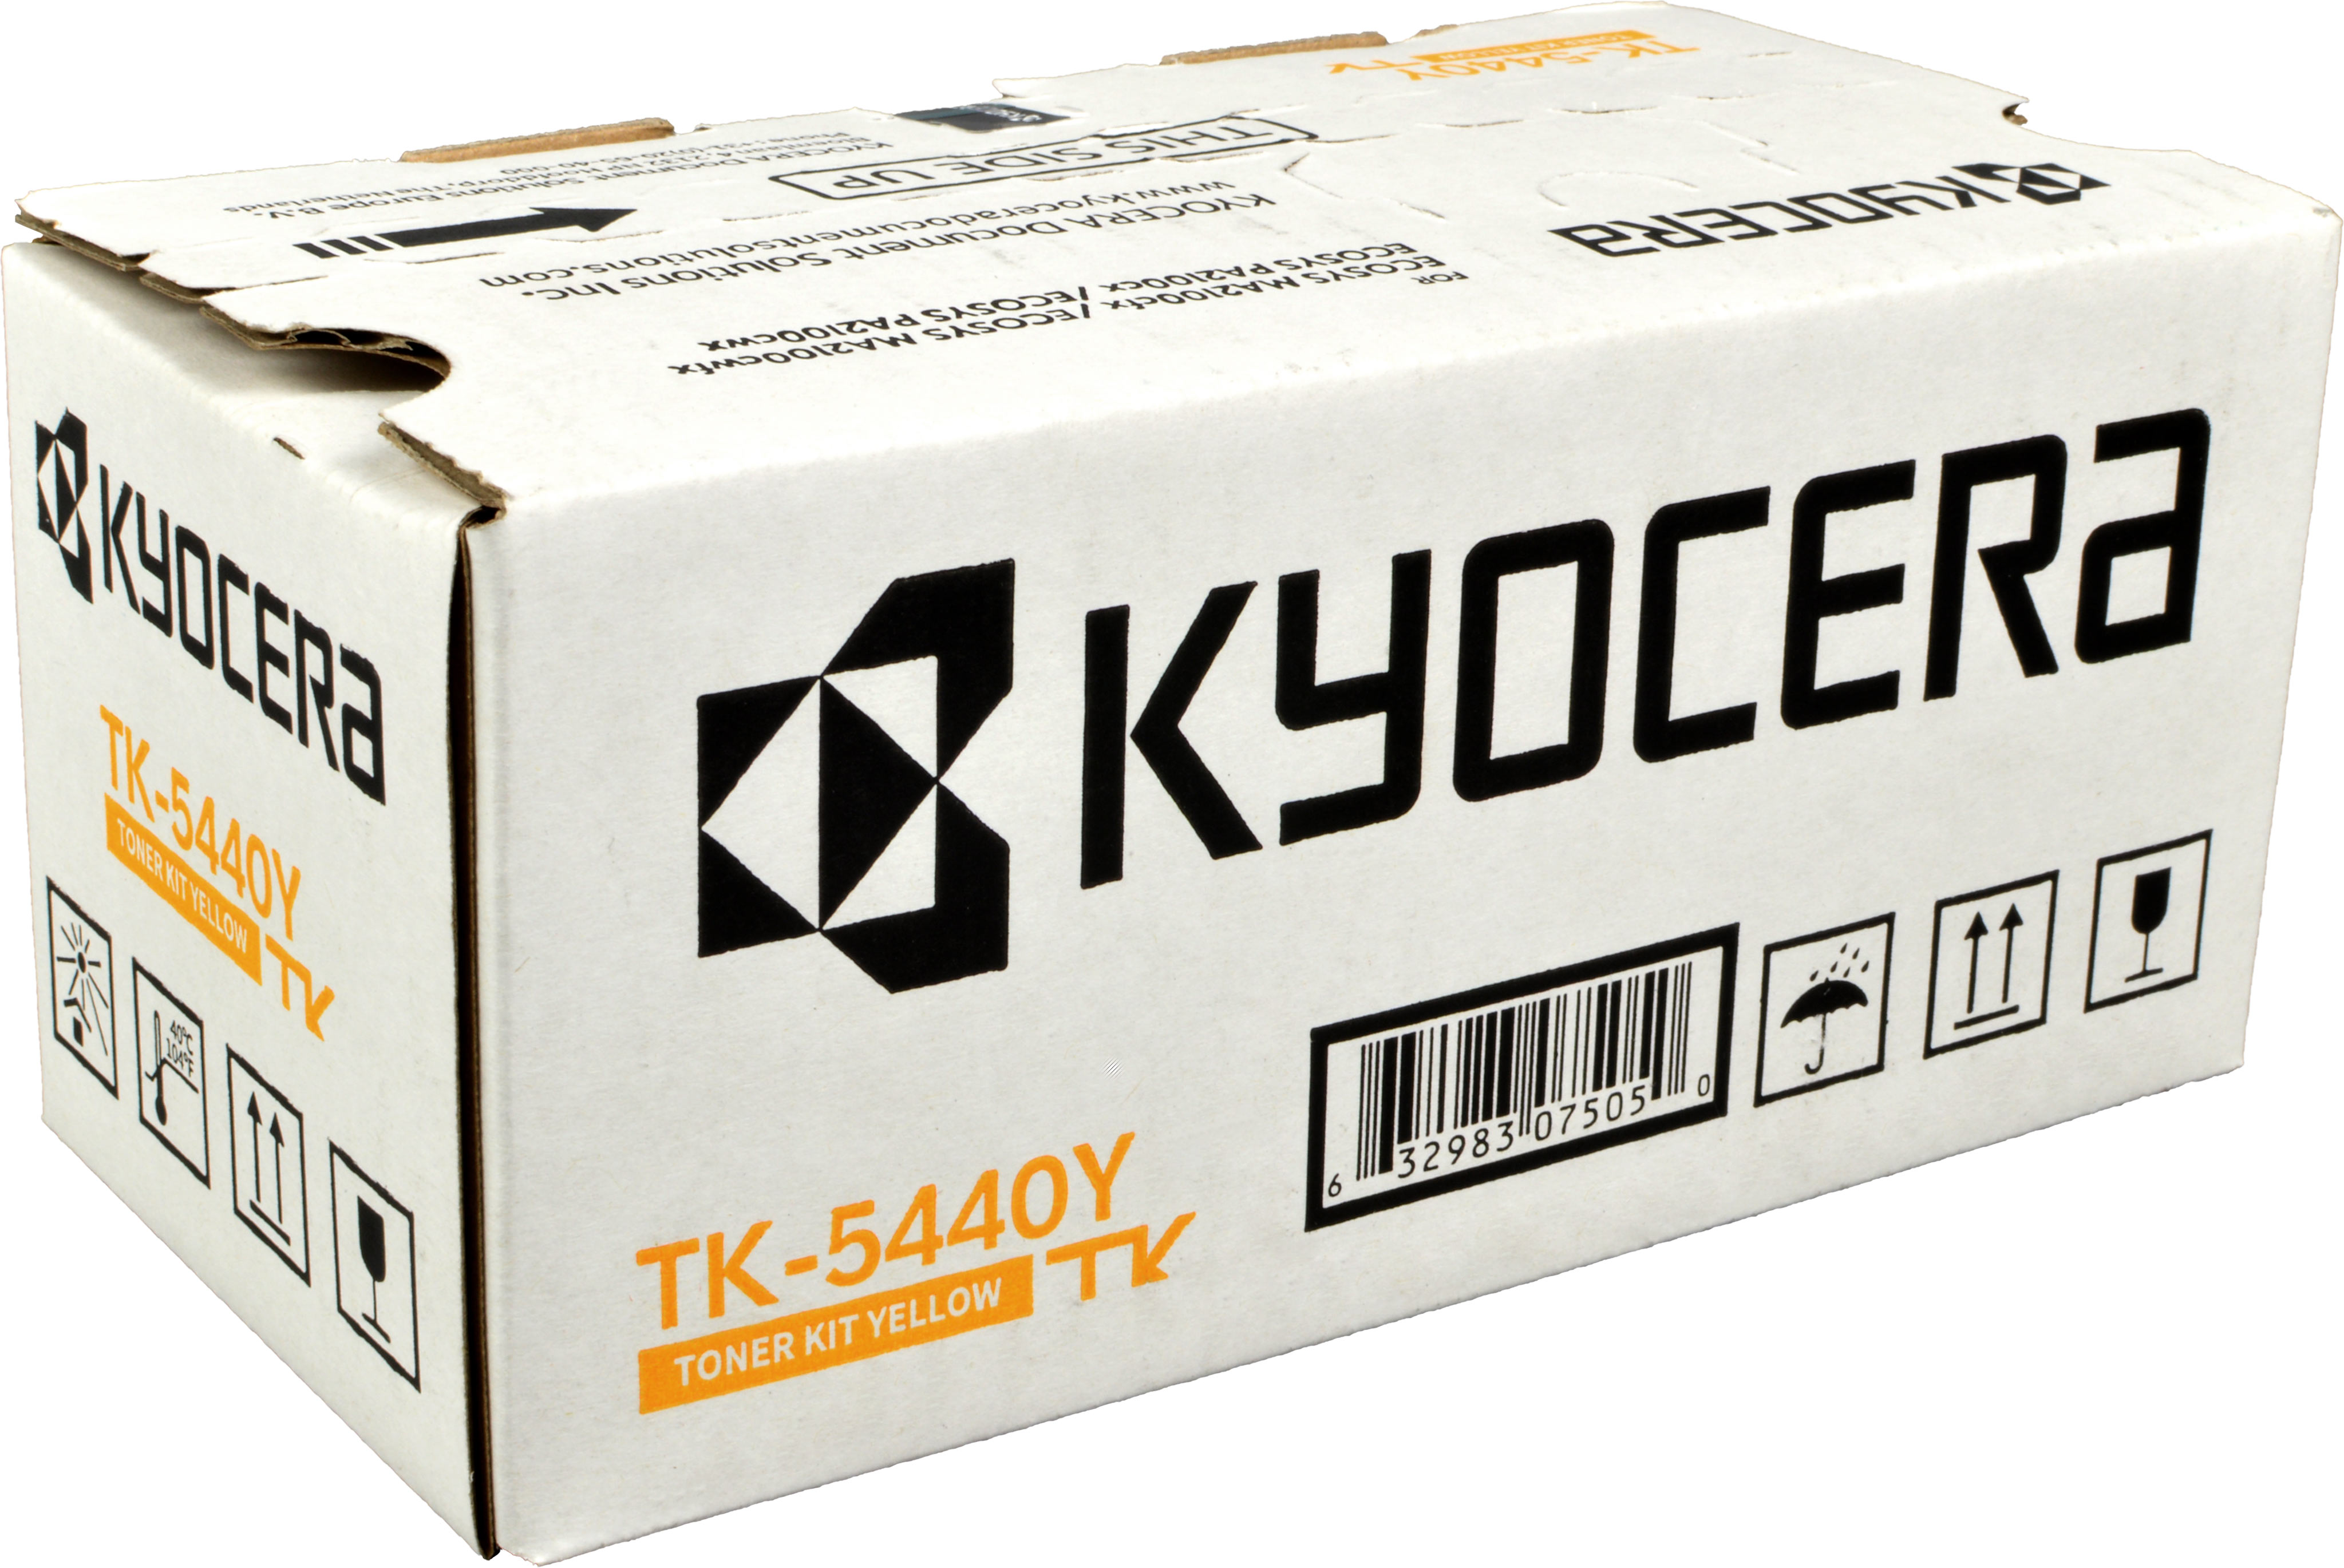 Kyocera Toner TK-5440Y  1T0C0AANL0  yellow